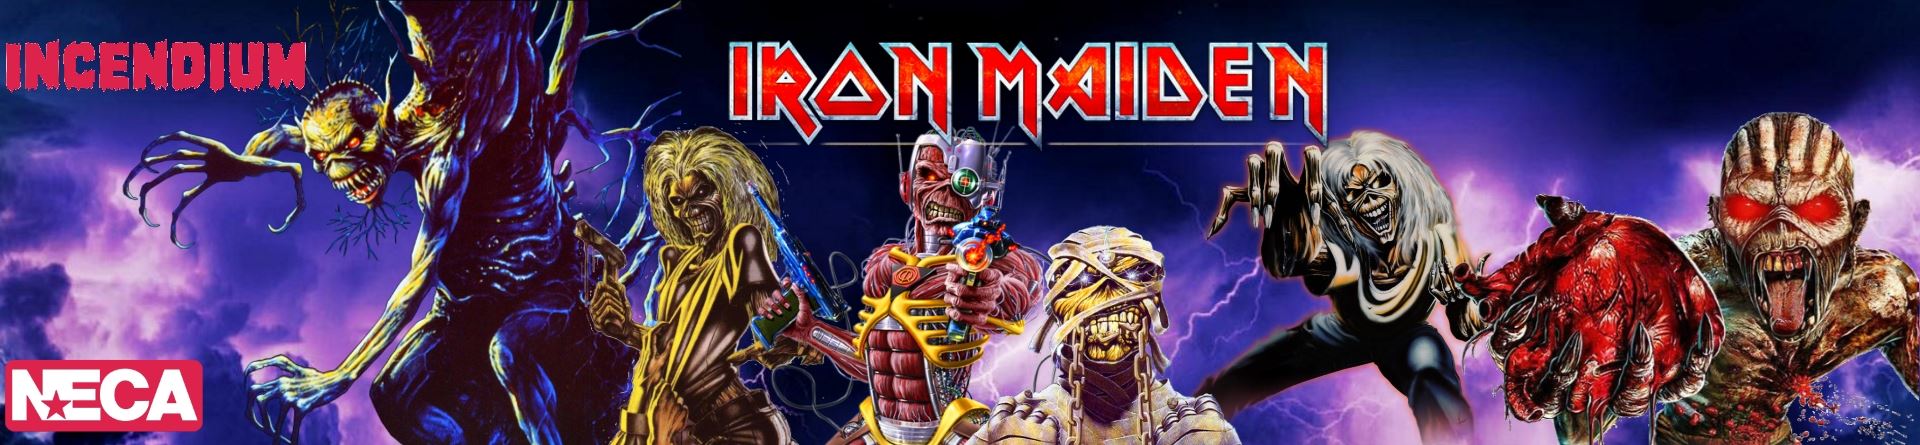 Figuras y merchandising de Iron Maiden